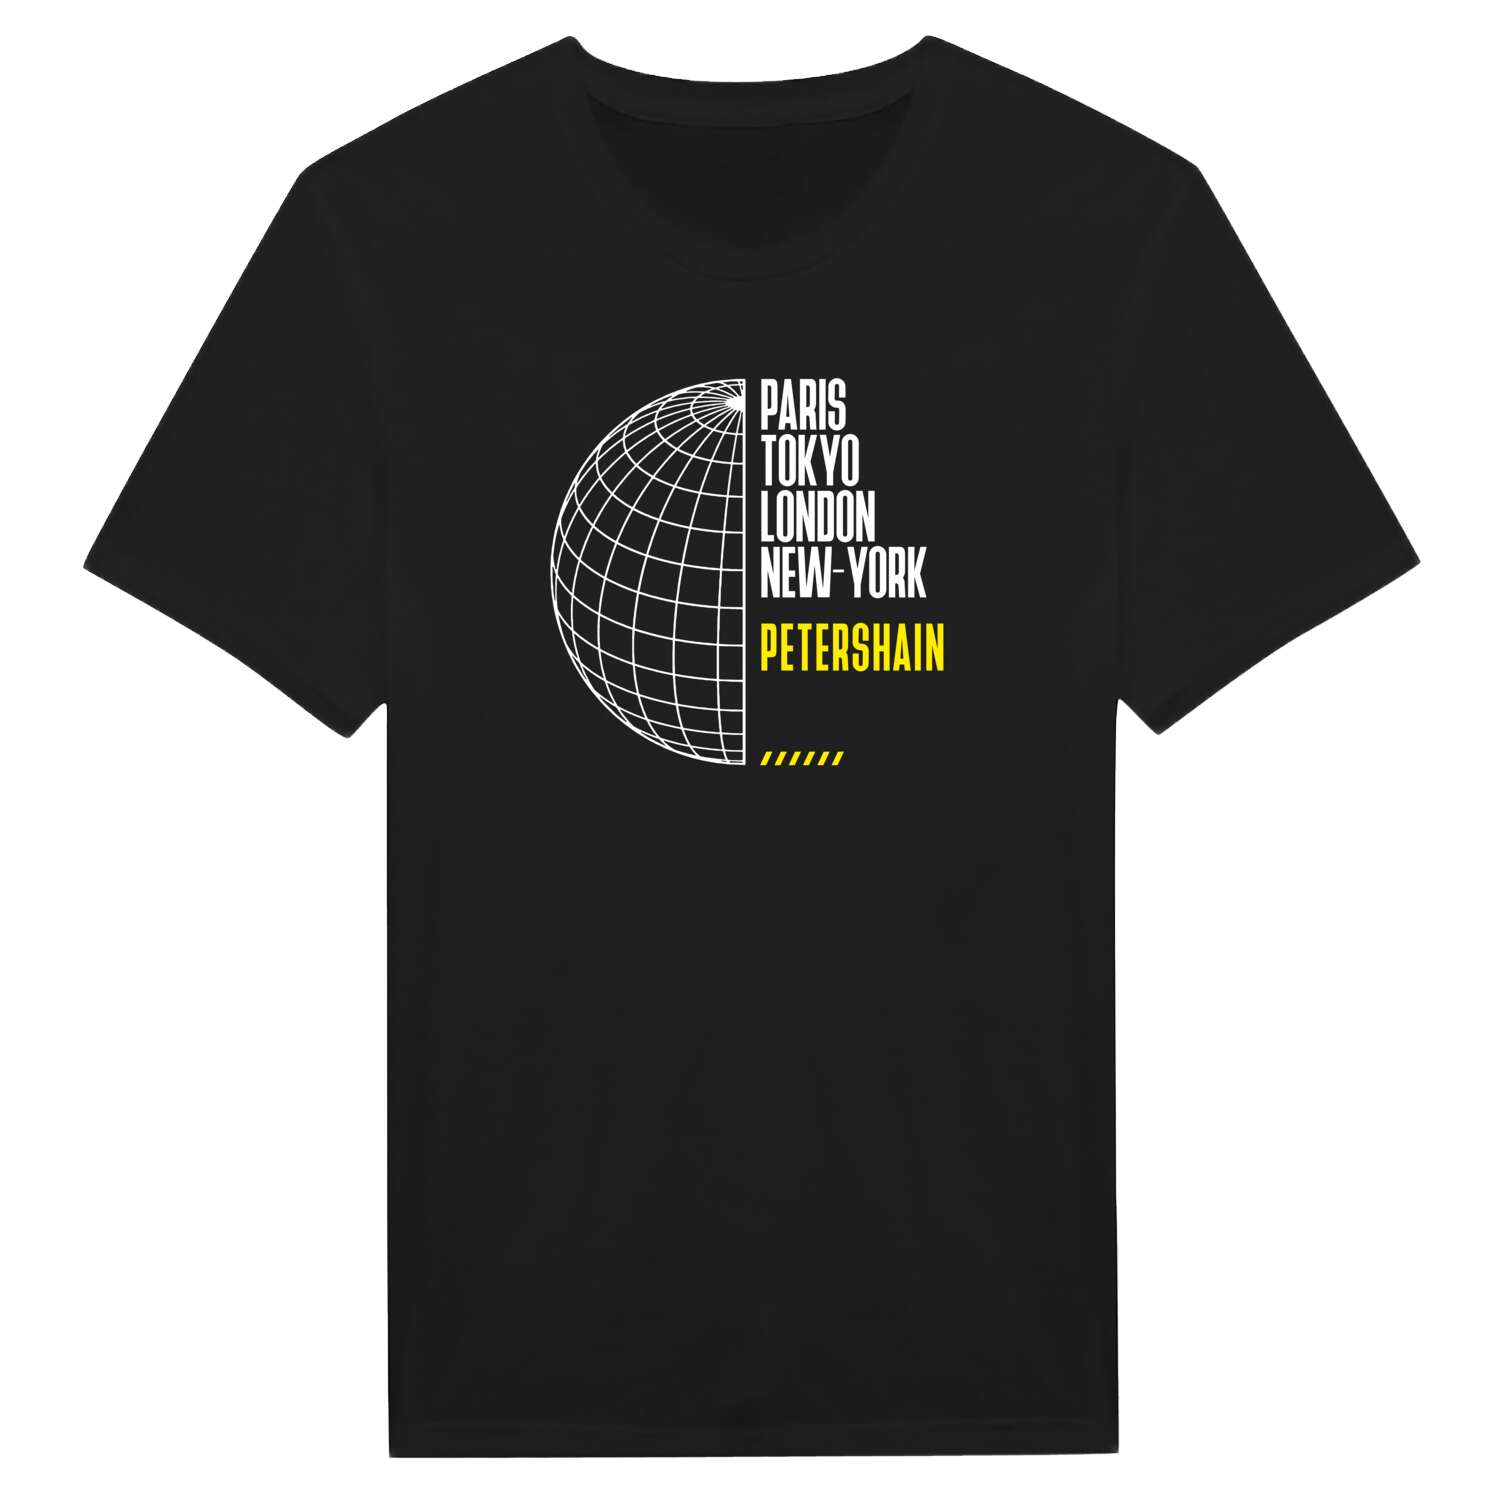 Petershain T-Shirt »Paris Tokyo London«